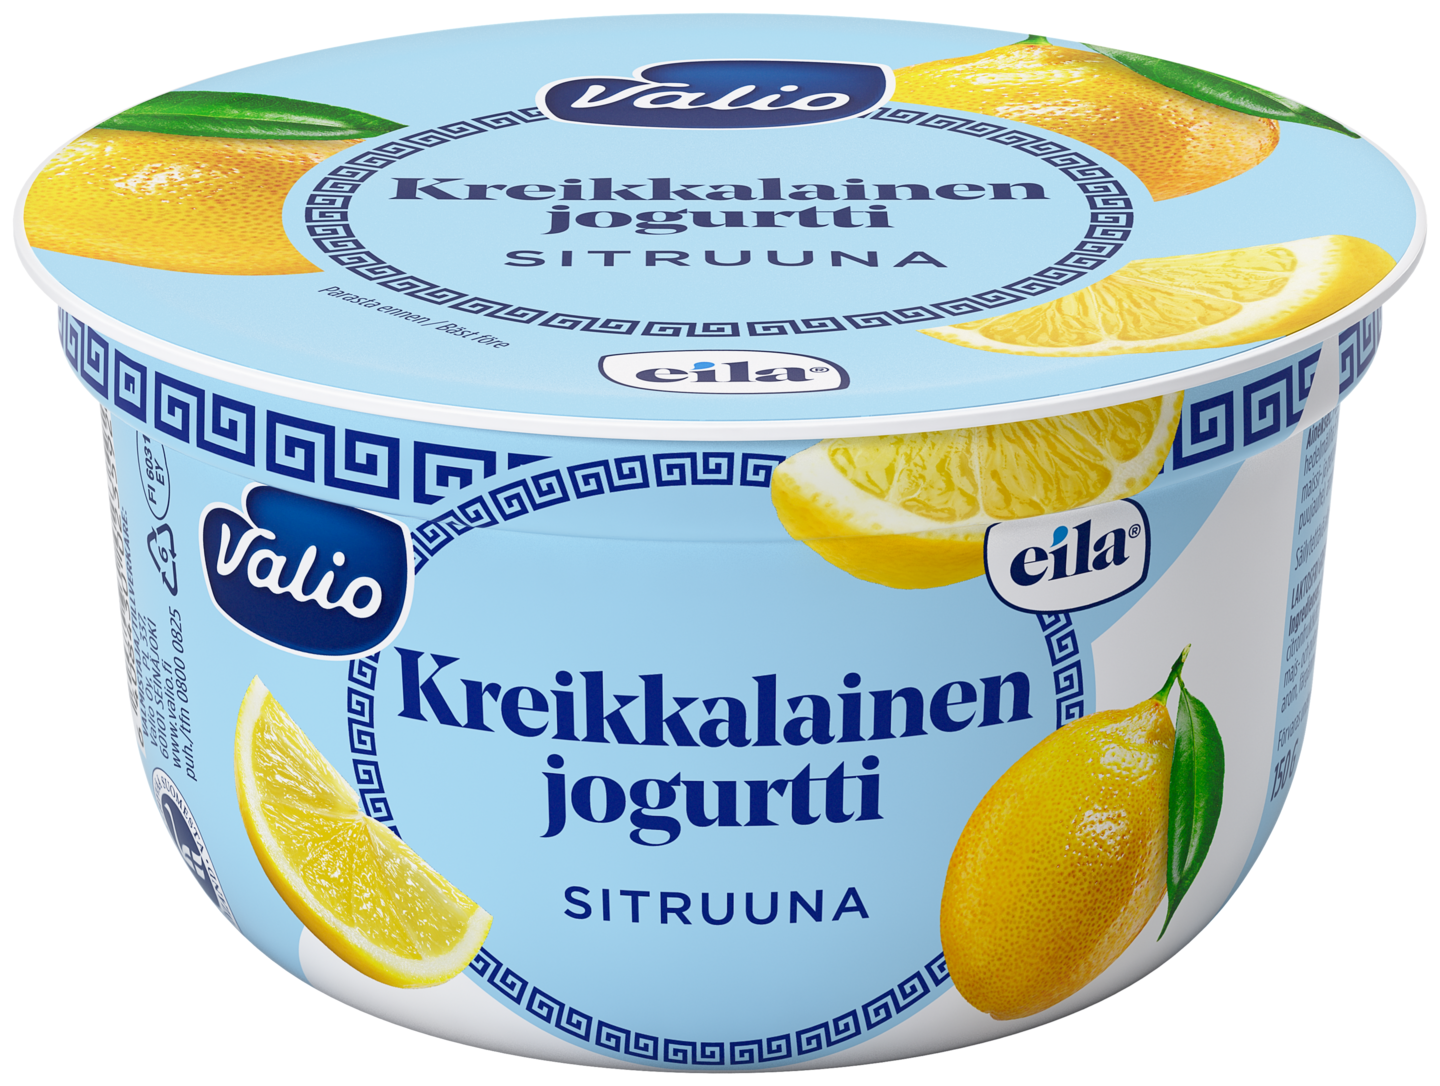 Valio kreikkalainen jogurtti 150g sitruuna laktoositon